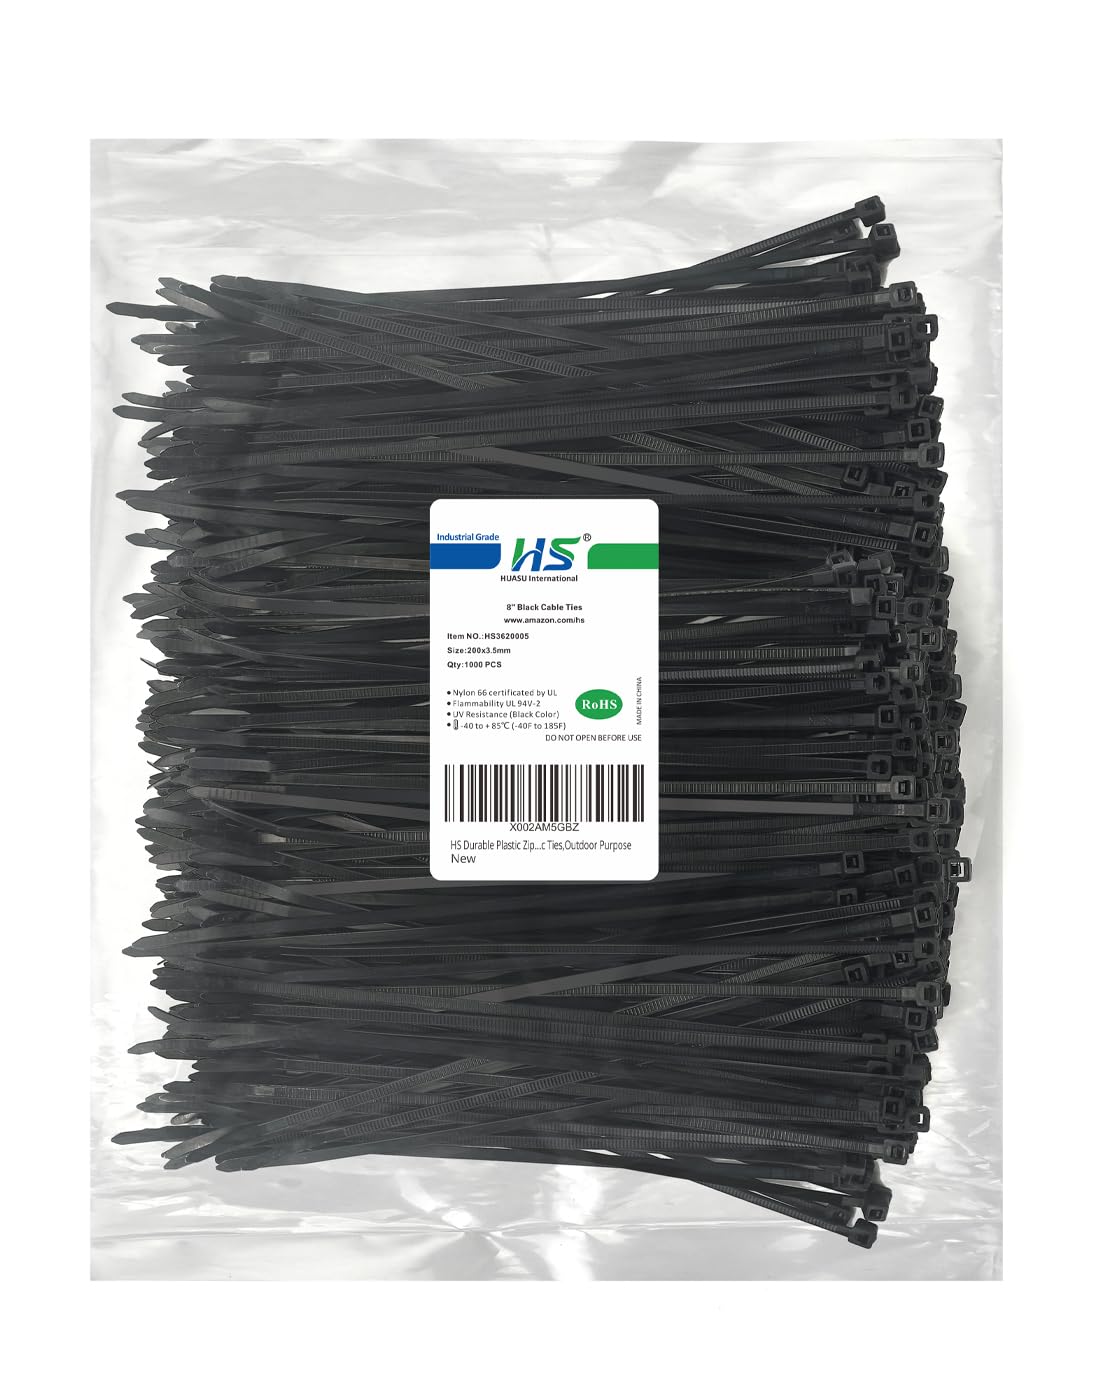 HS Durable Plastic Zip Ties 8 Inch (Bulk-1000 Pack) UV Black Cable Ties 40 Lbs Self-Locking Wire Ties Width 1/8 Inch,Outdoor Purpose